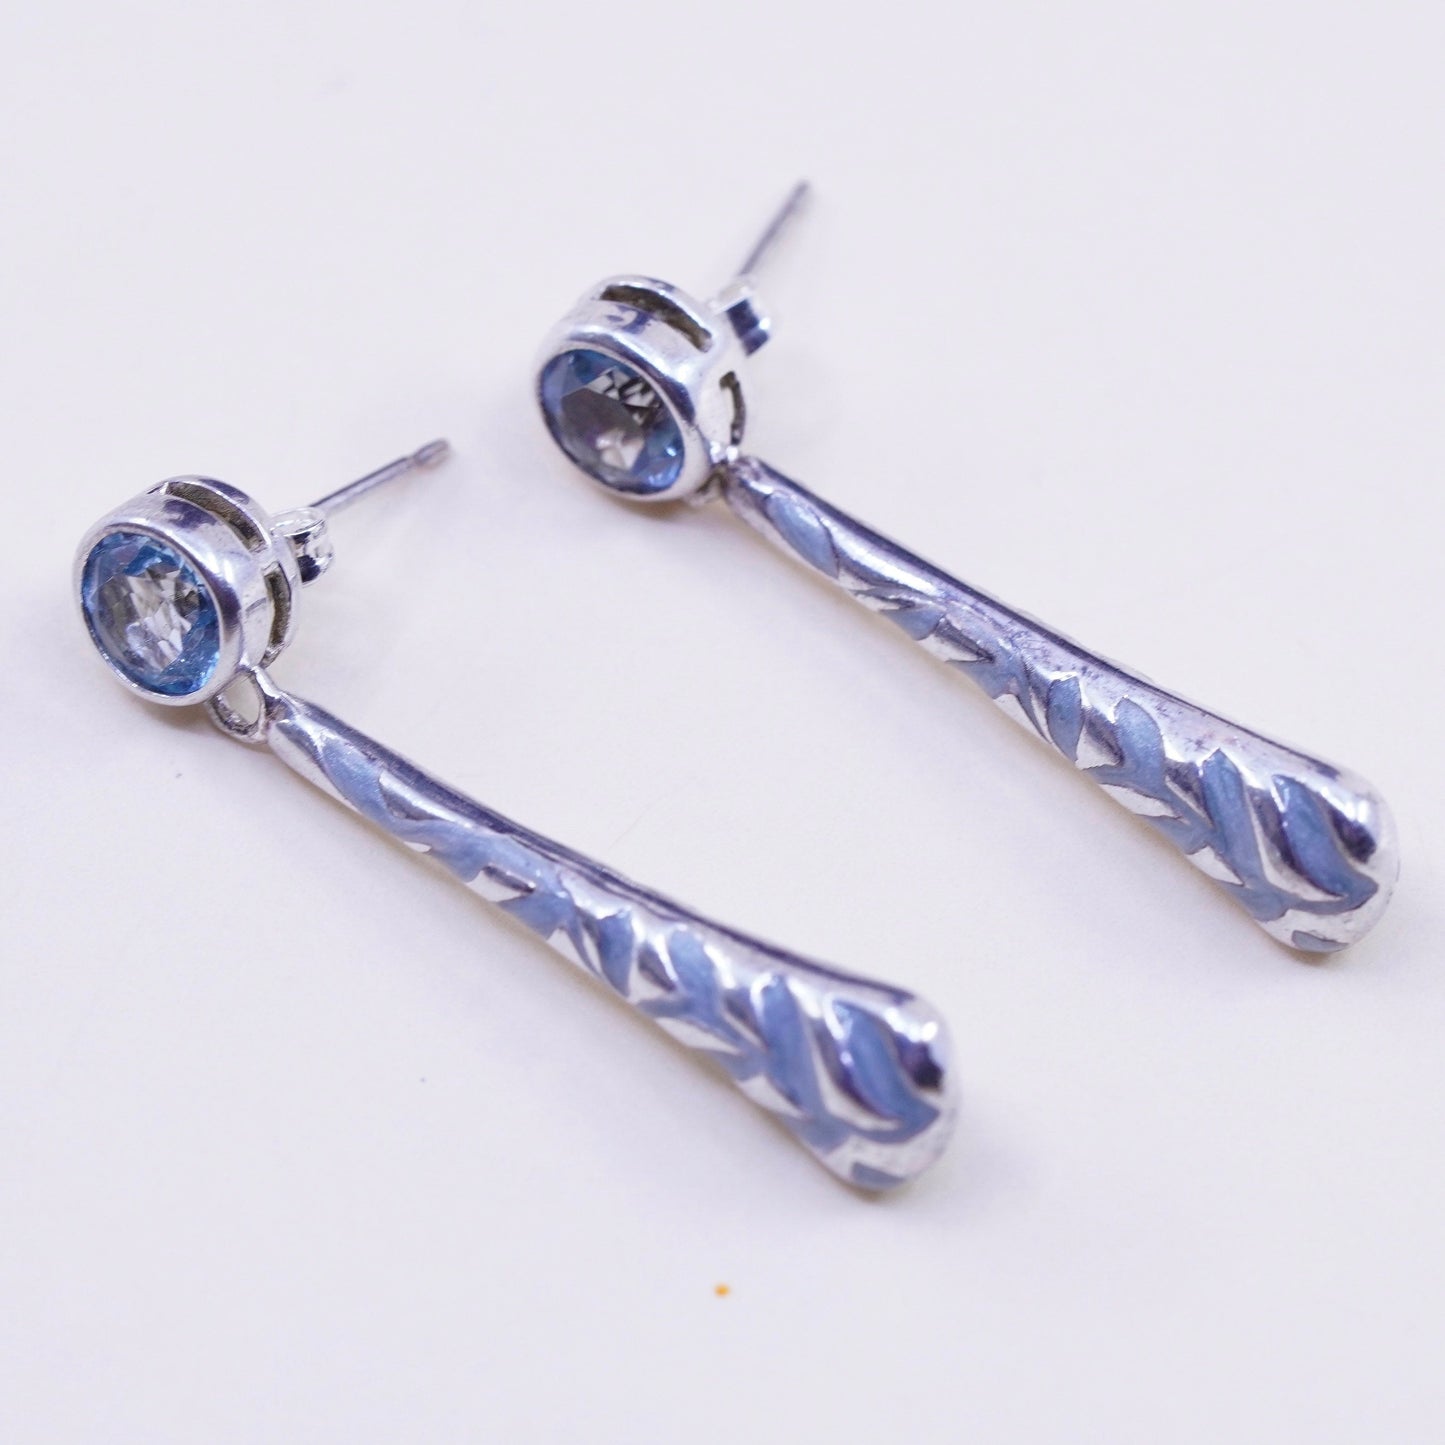 Vintage sterling silver handmade earrings, 925 teardrop with enamel inlay